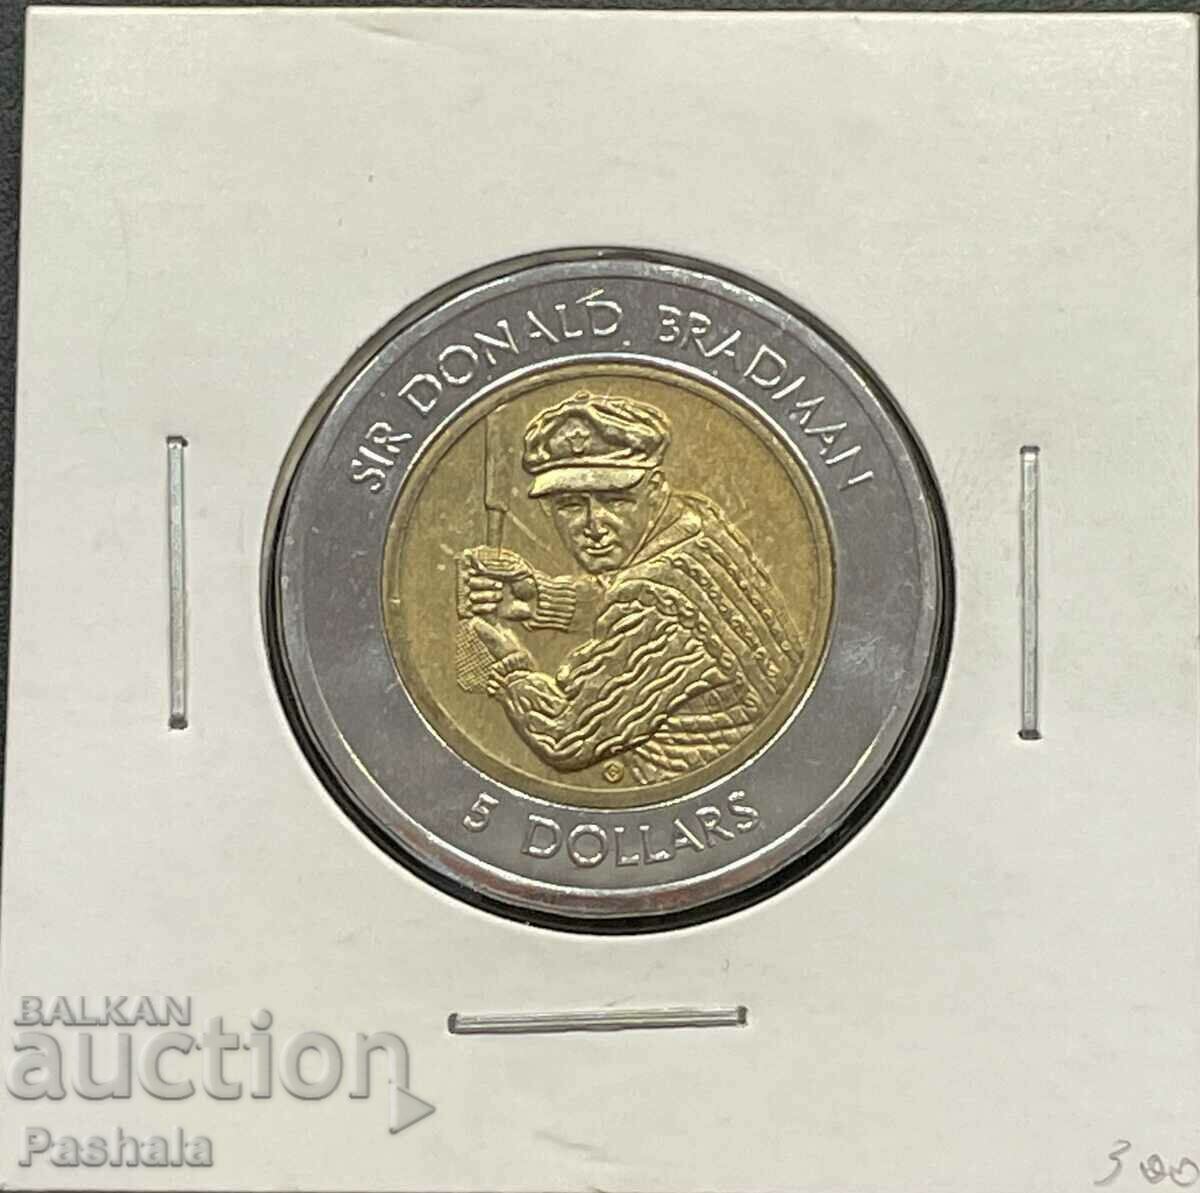 Australia $5 1996